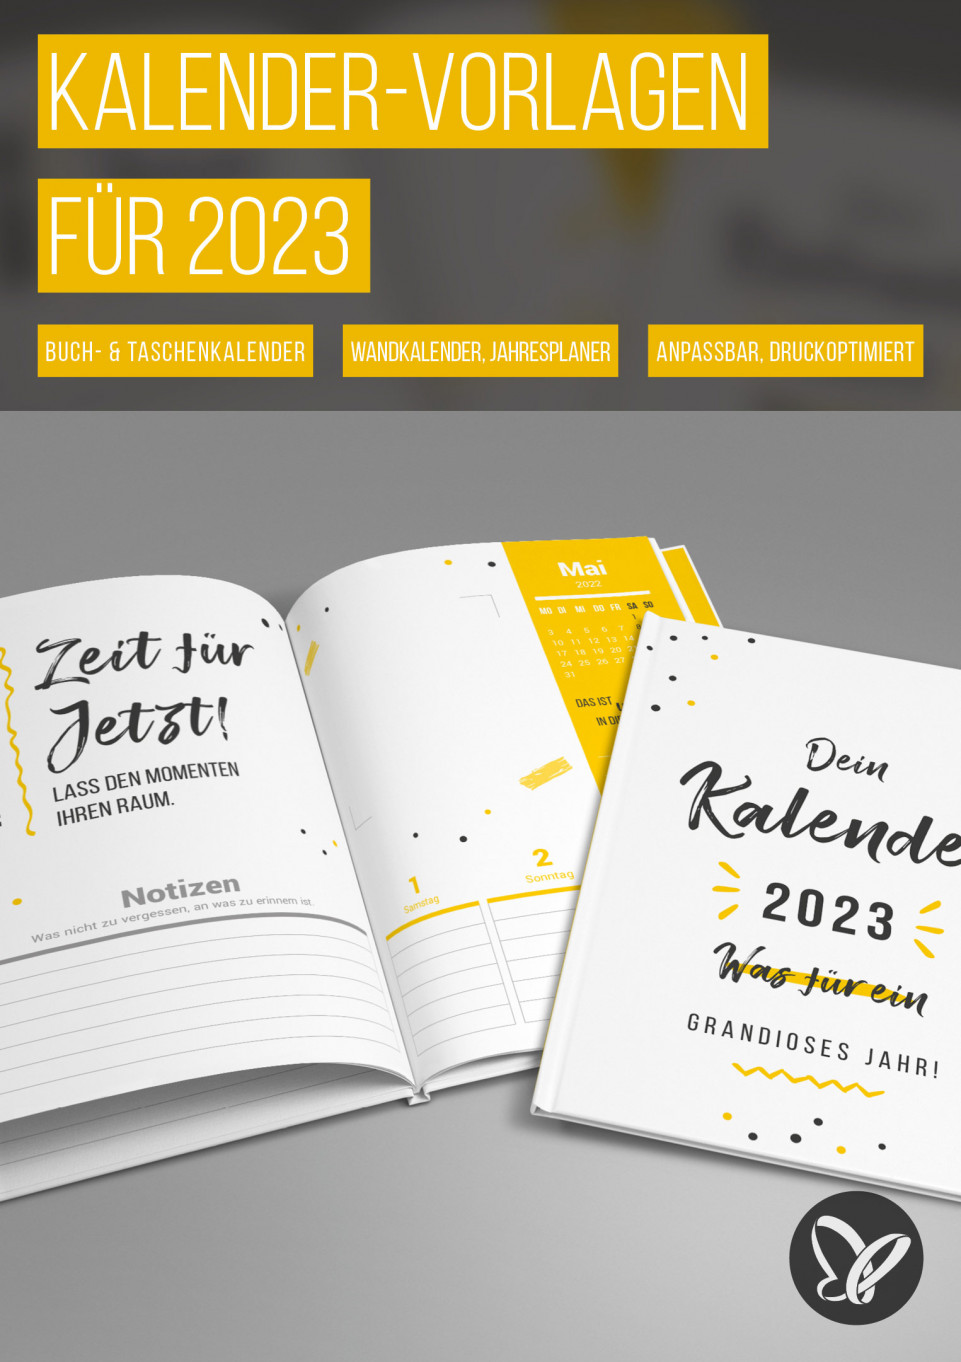 Kalender-Vorlagen 2023: Jahresplaner, Buchkalender und Co.